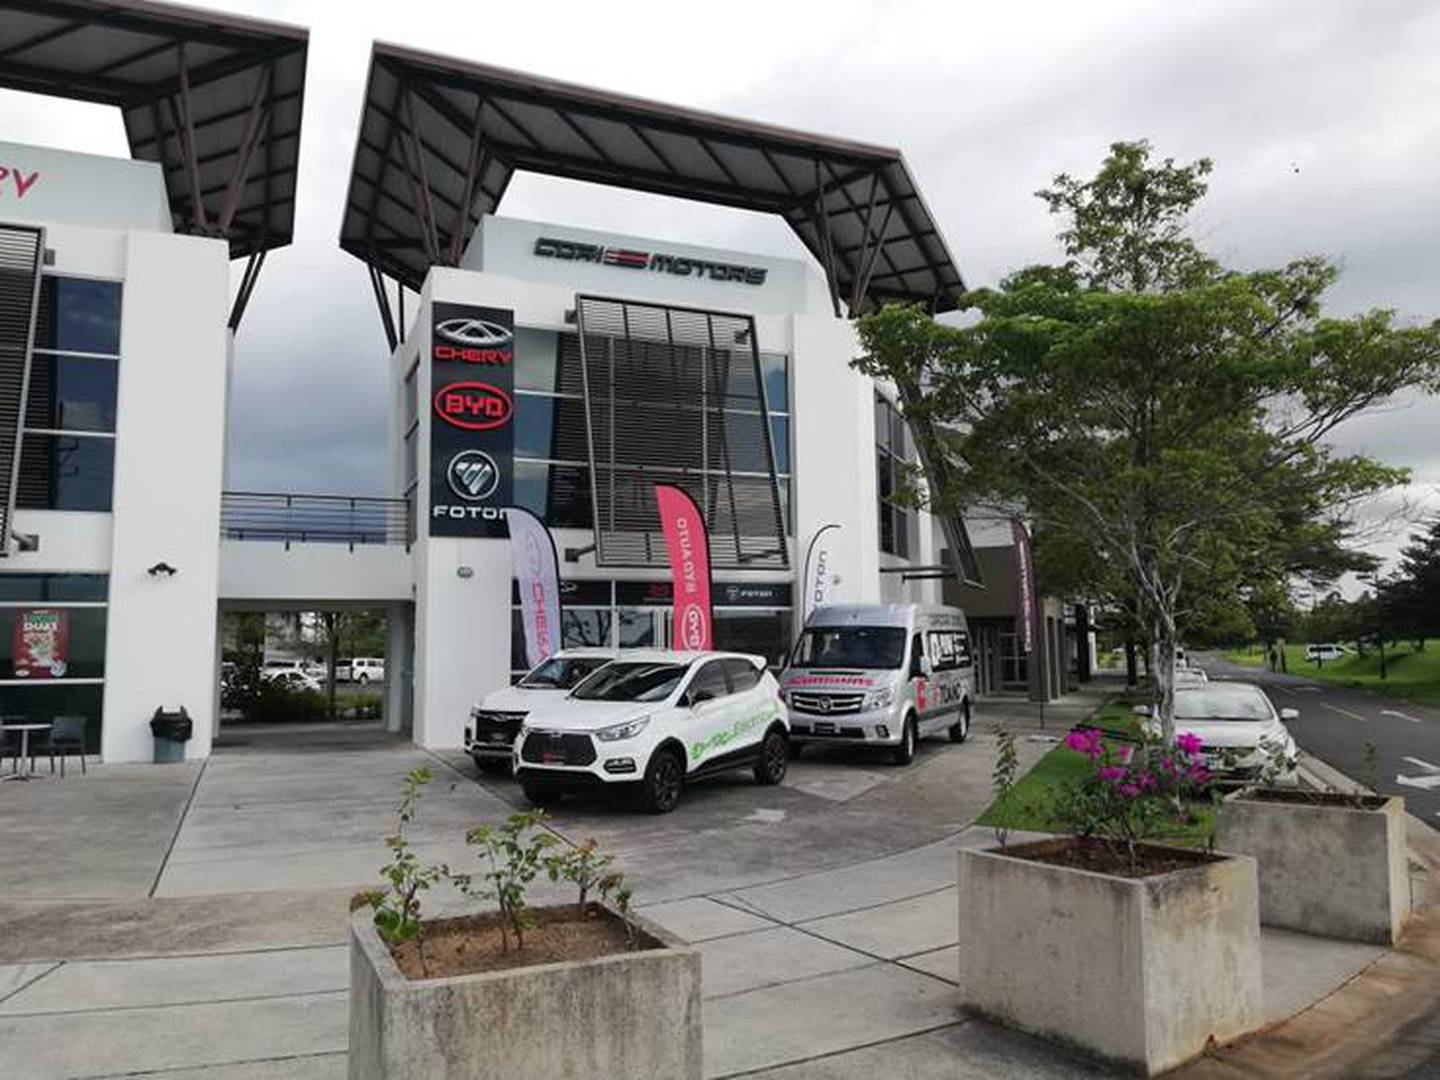 La agencia Cori Motors abrió, en octubre del 2020, una sucursal en Liberia para la venta de vehículos BYD, Chery y Foton. Foto: Cortesía Cori Motors.